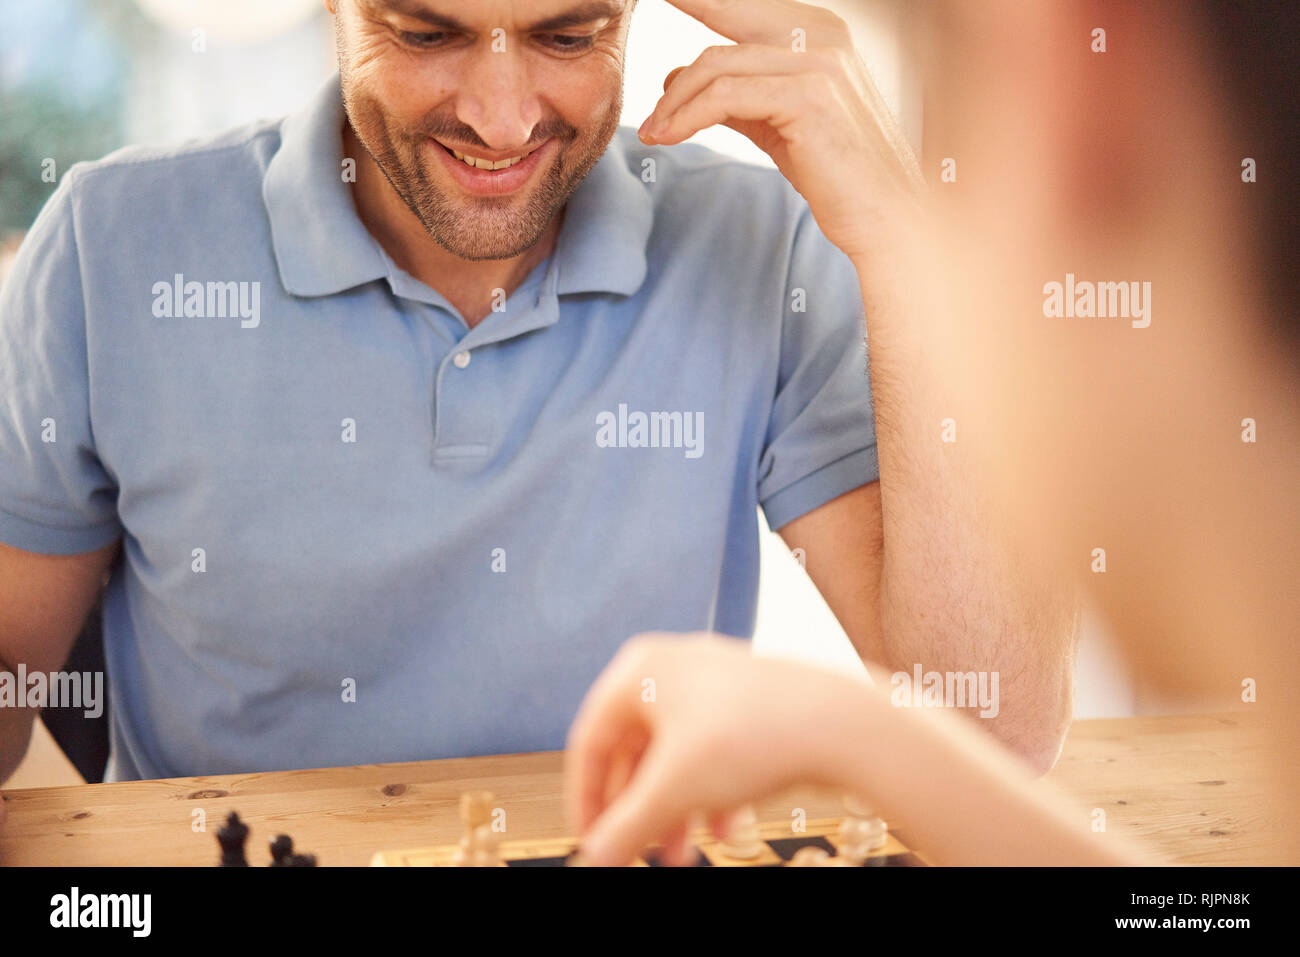 Junge und Vater spielen Schach im Wohnzimmer Tisch, über die Schulter, Nahaufnahme Stockfoto